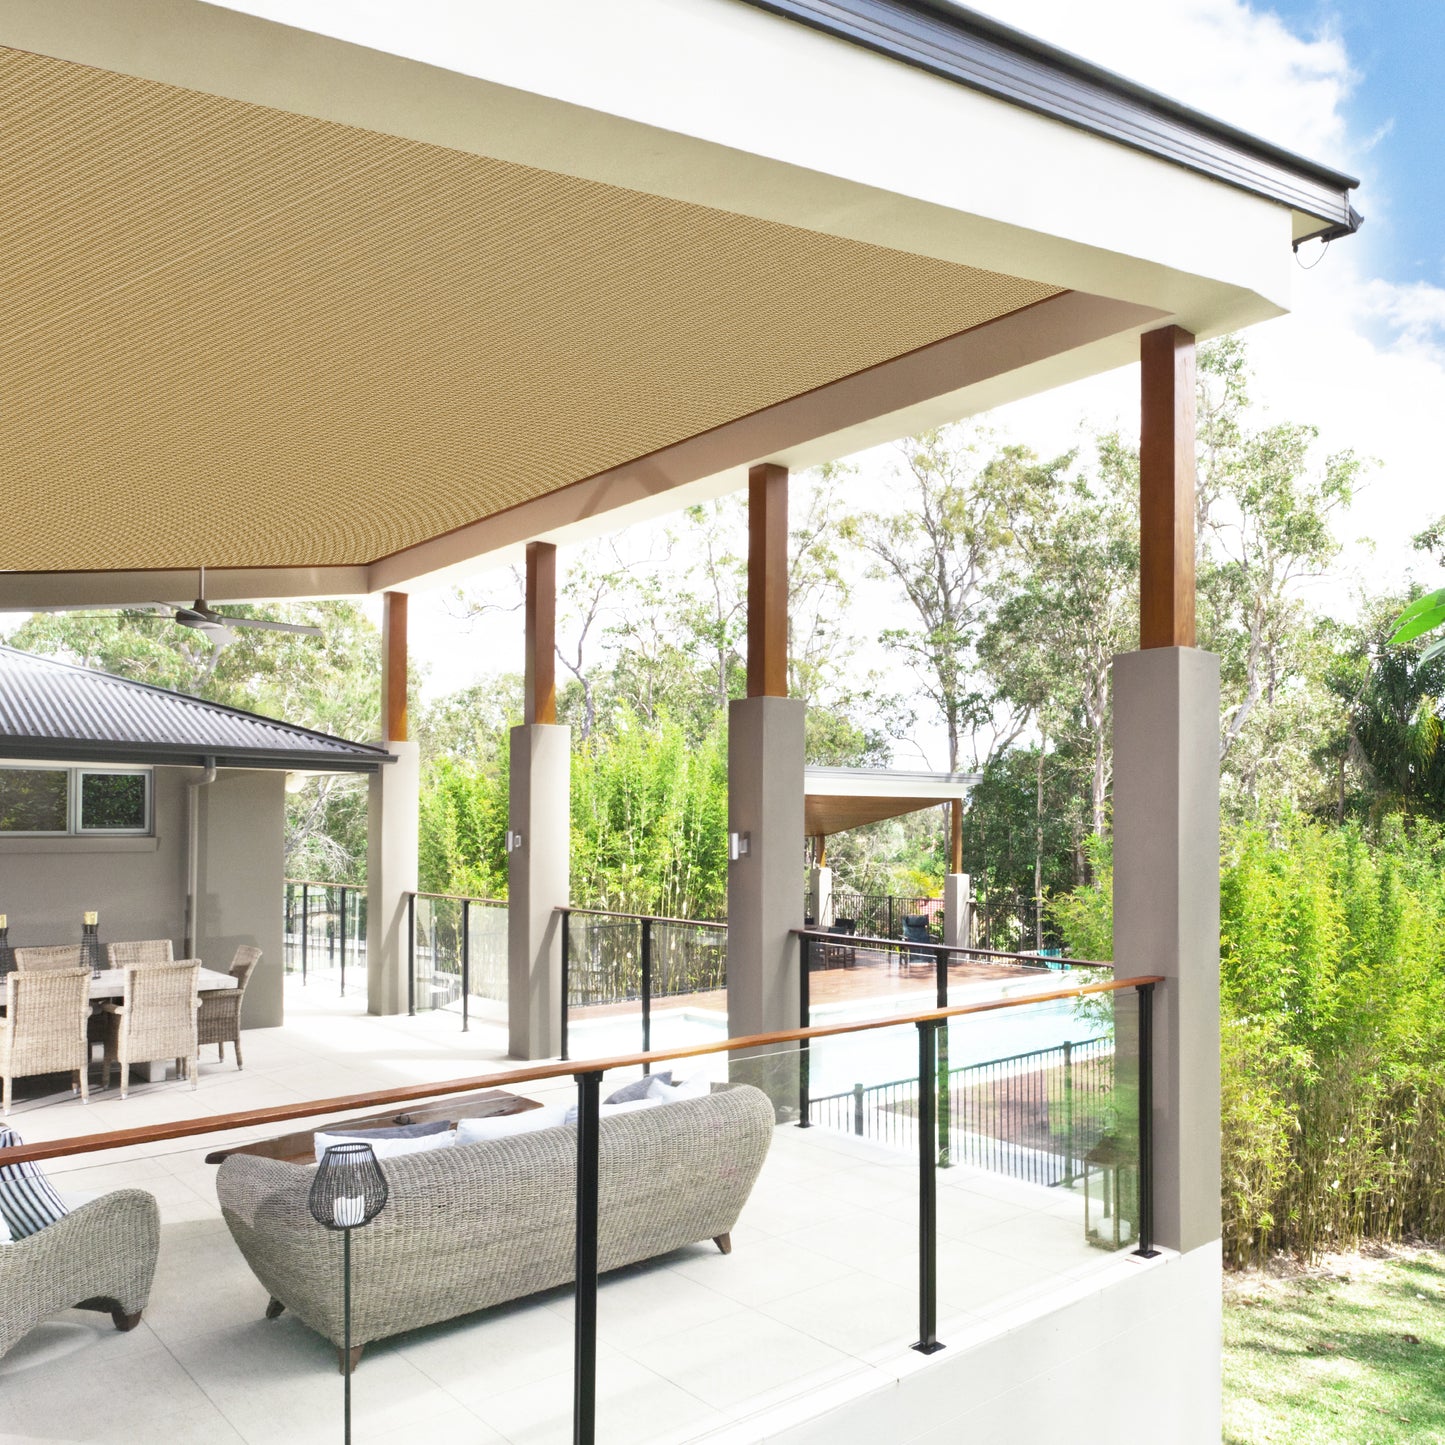 90% Shade Fabric Sun Shade Cloth Privacy Screen for Outdoor Patio Garden Pergola Cover Canopy